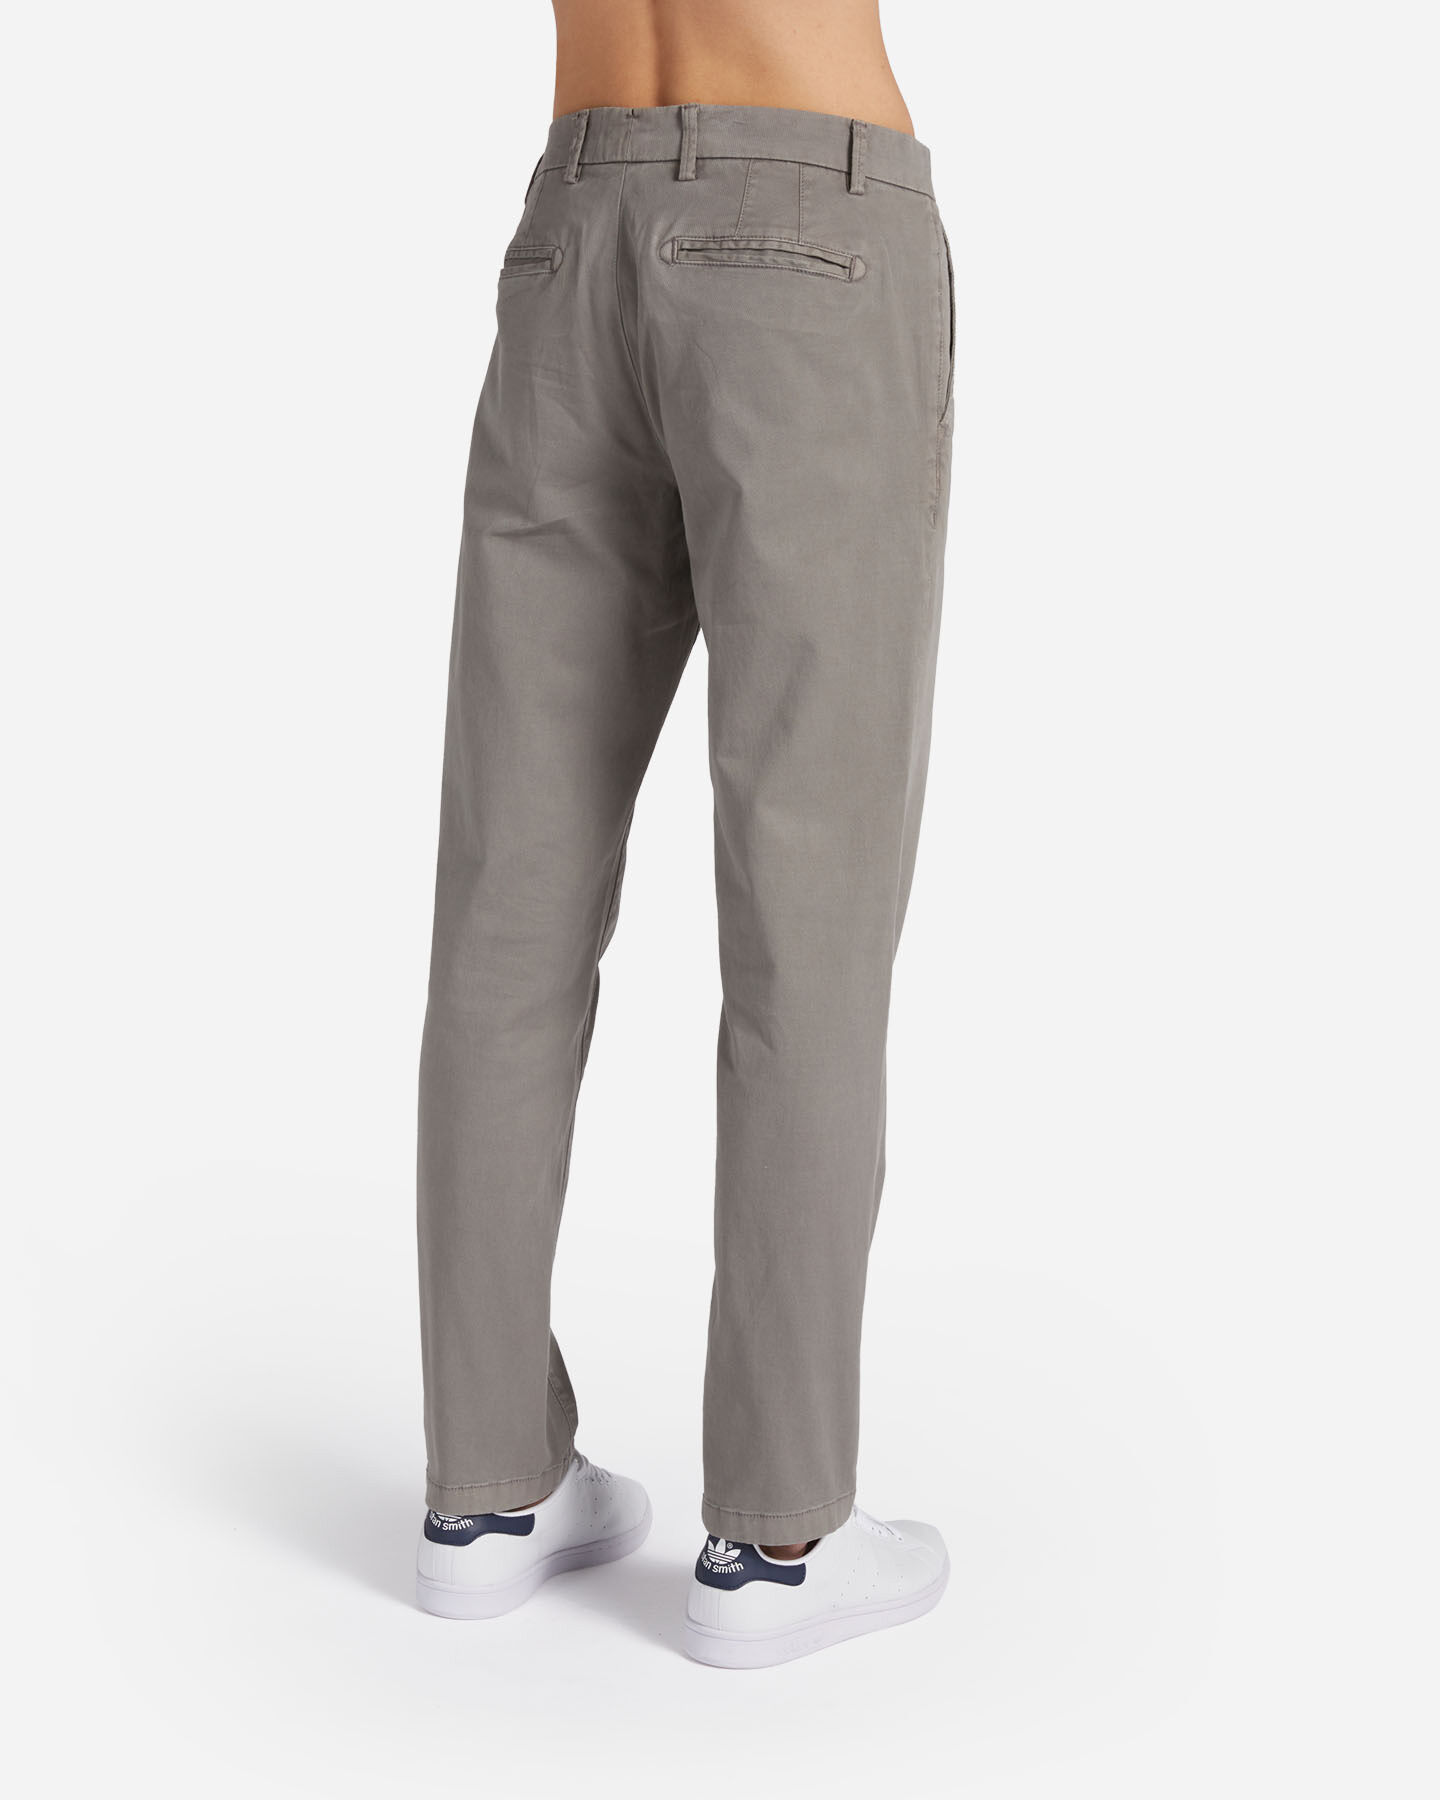  Pantalone DACK'S URBAN M S4125382|909|48 scatto 1